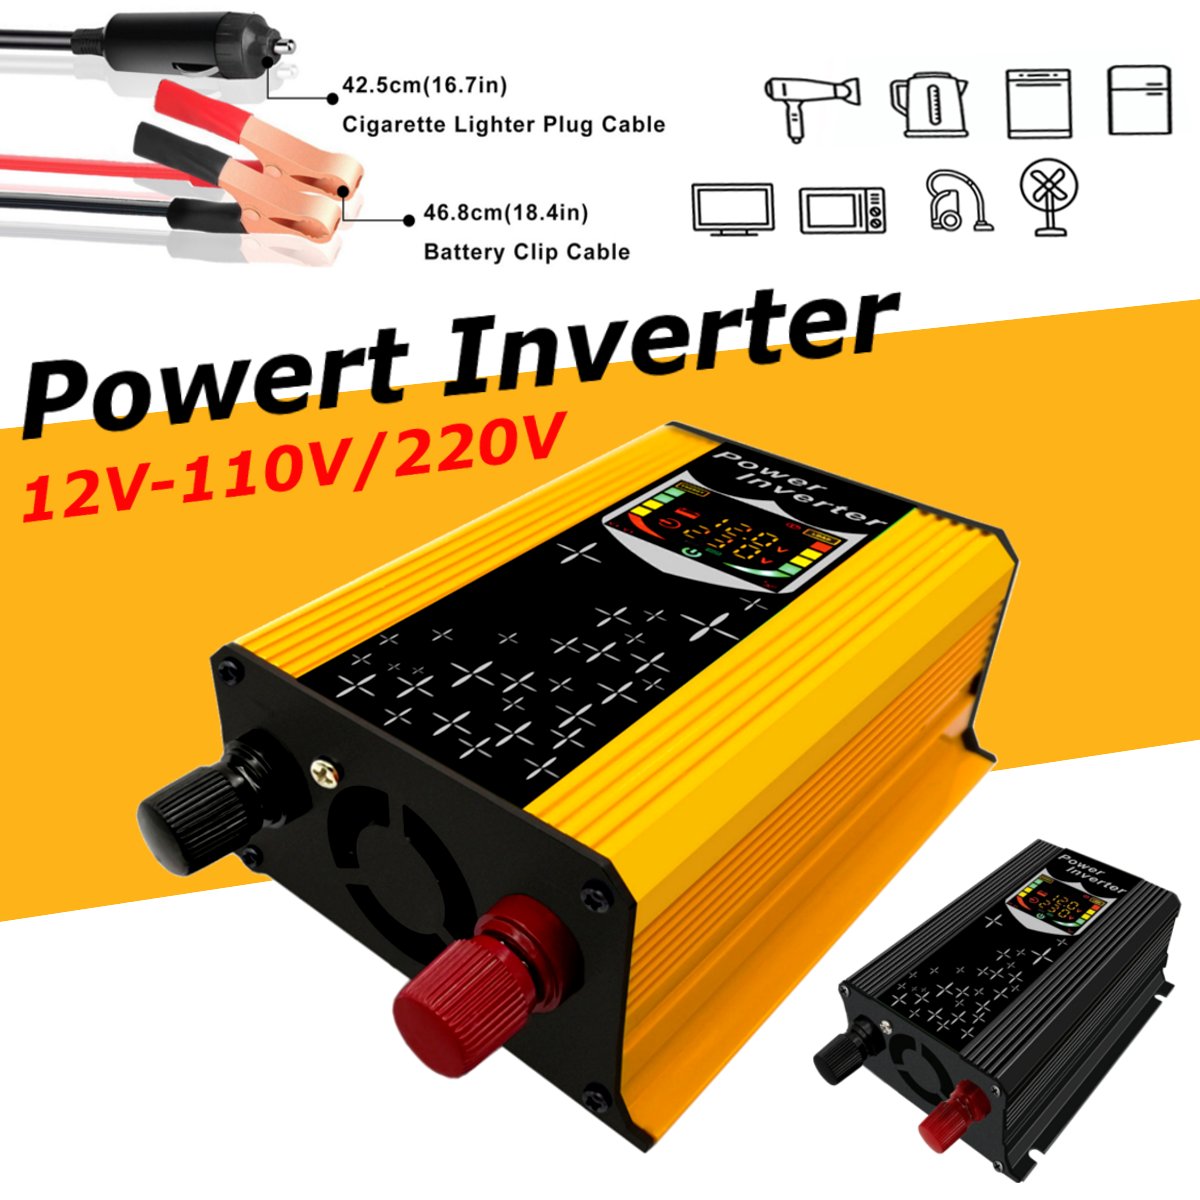 12V-110V220V-Dispaly-Inverter-450W-Power-Inverter-Car-Modified-Sine-Wave-Converter-Solar-Power-Charg-1478442-3